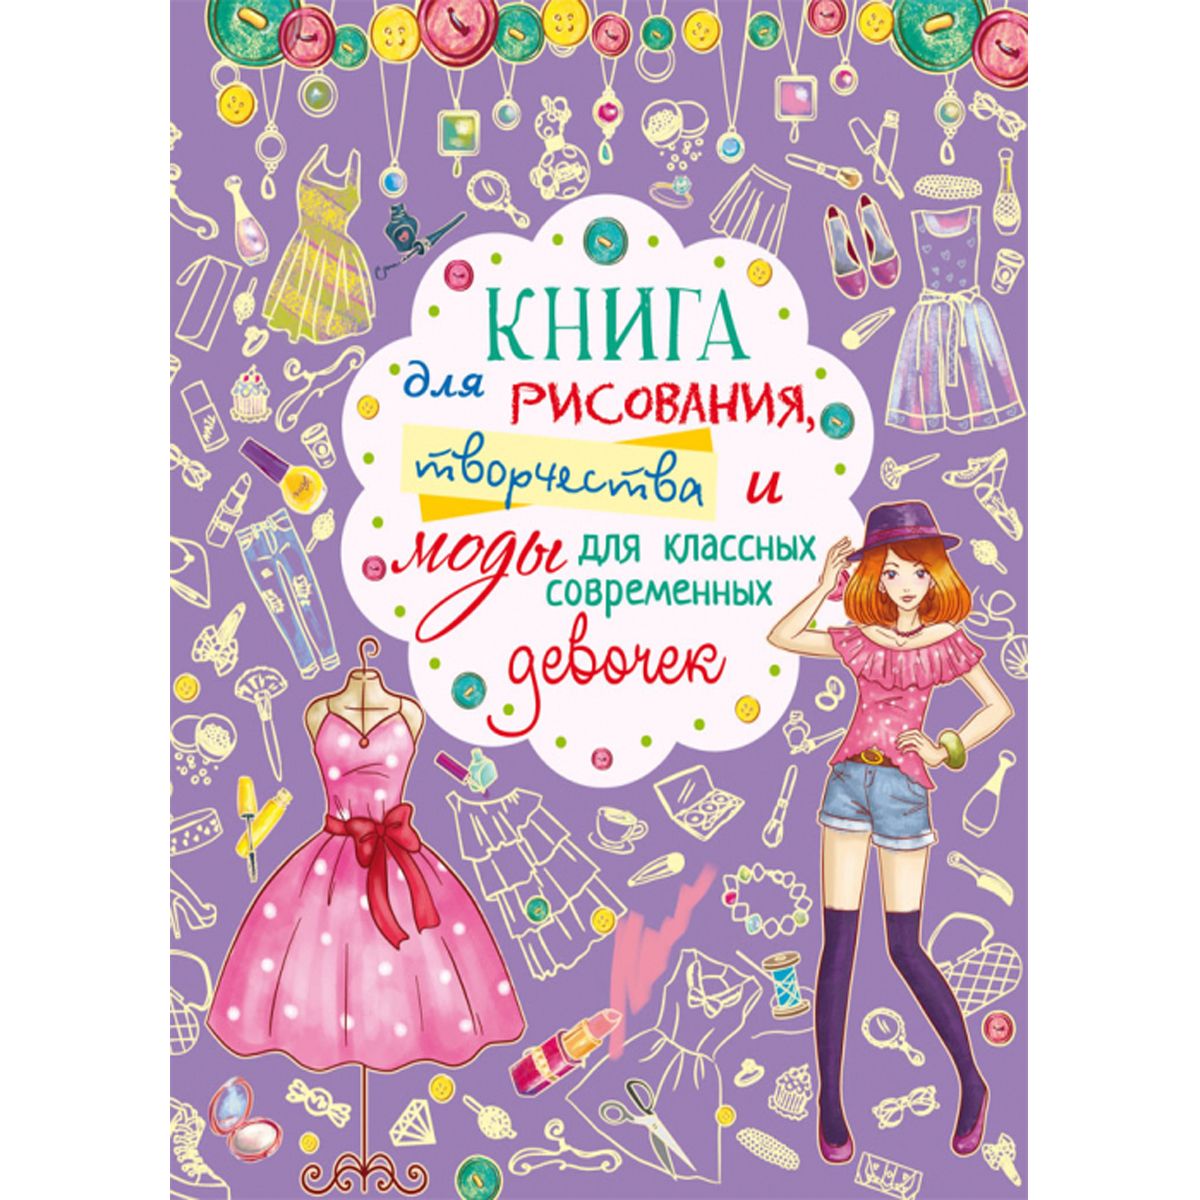 Книга "Для рисования, творчества и моды для классных современных девочек", рус